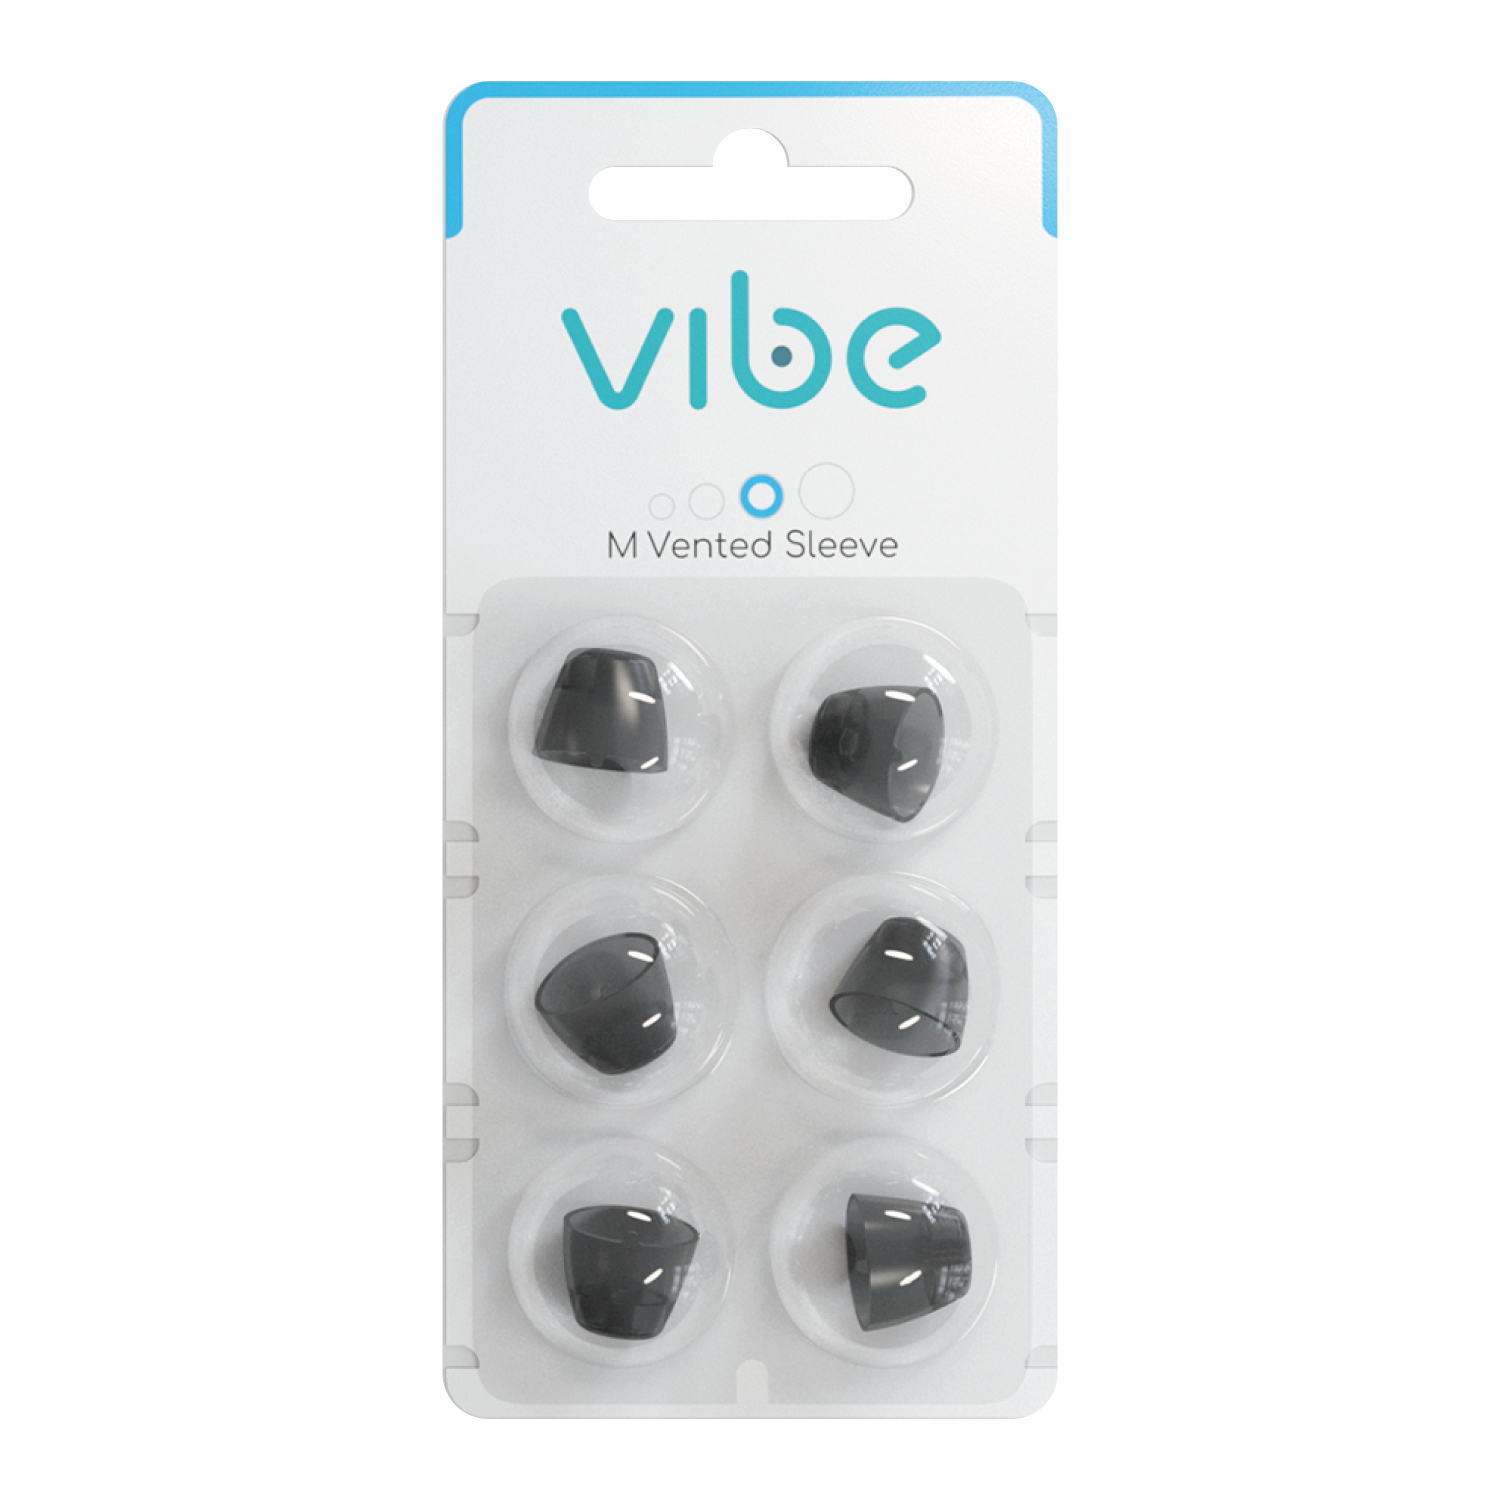 Vibe Air 用 交換用 スリーブ 耳せん Mサイズ 穴あり 6個入 交換時期 3ヶ月 Signia Sivantos 取り換え 汚れ 新品 耳穴 耳あな 補聴器 Signia ヴィーブ エア 2.0